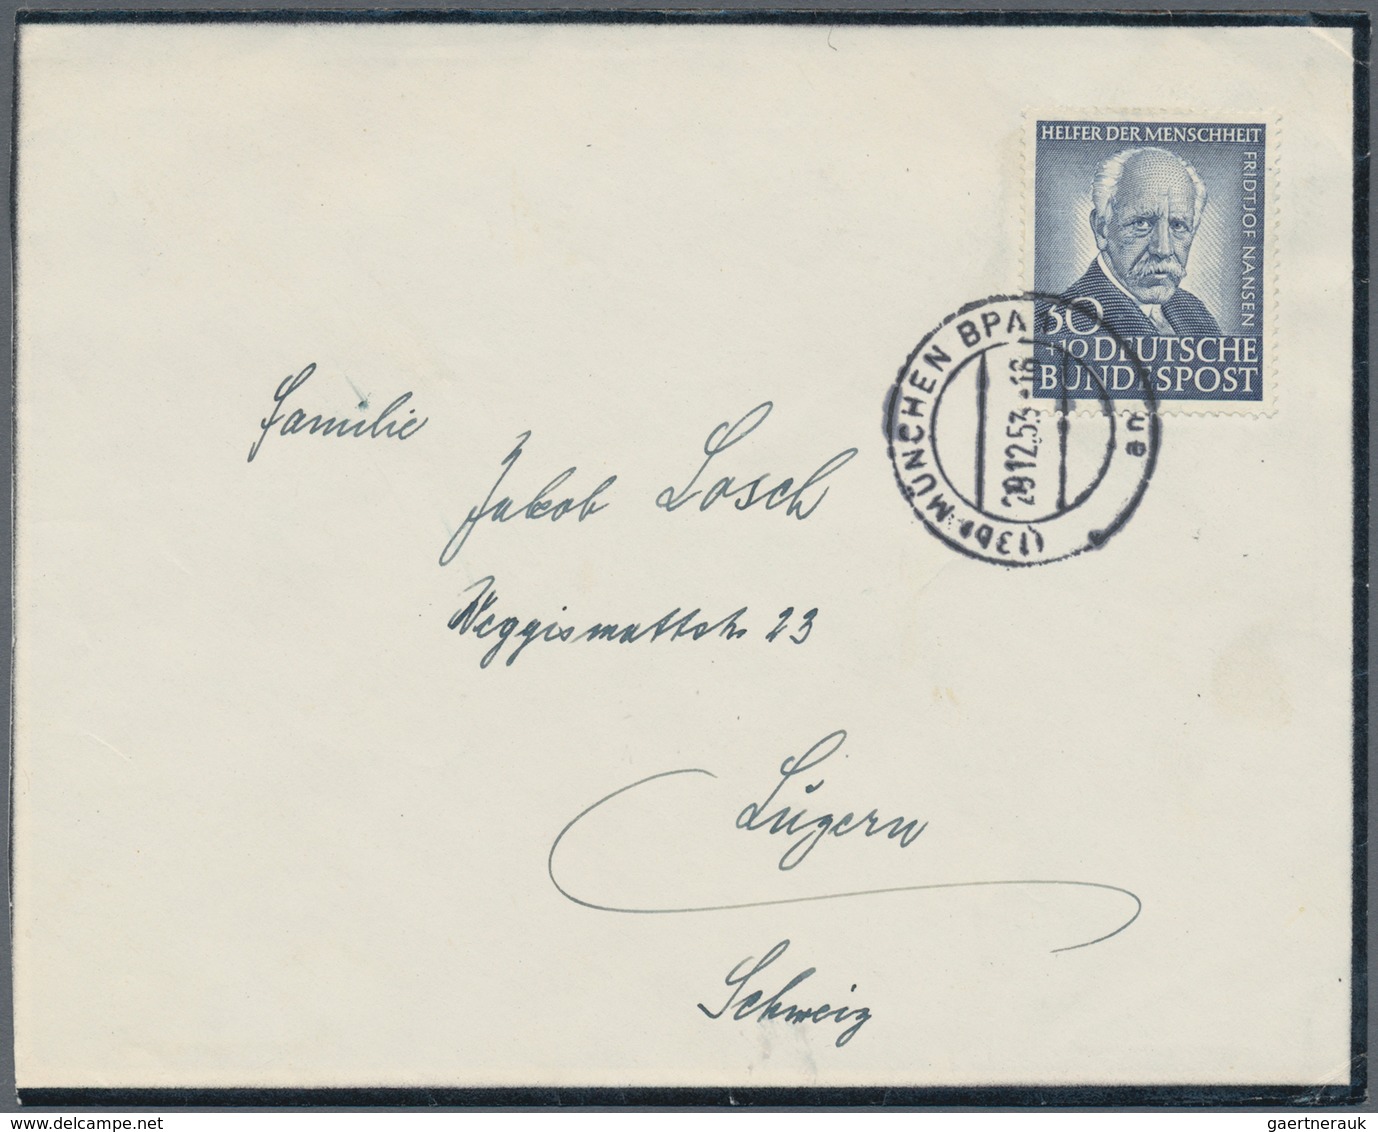 Bundesrepublik Deutschland: 1949/2019, umfassende Sammlung von ca. 4.330 Briefen und Karten, augensc